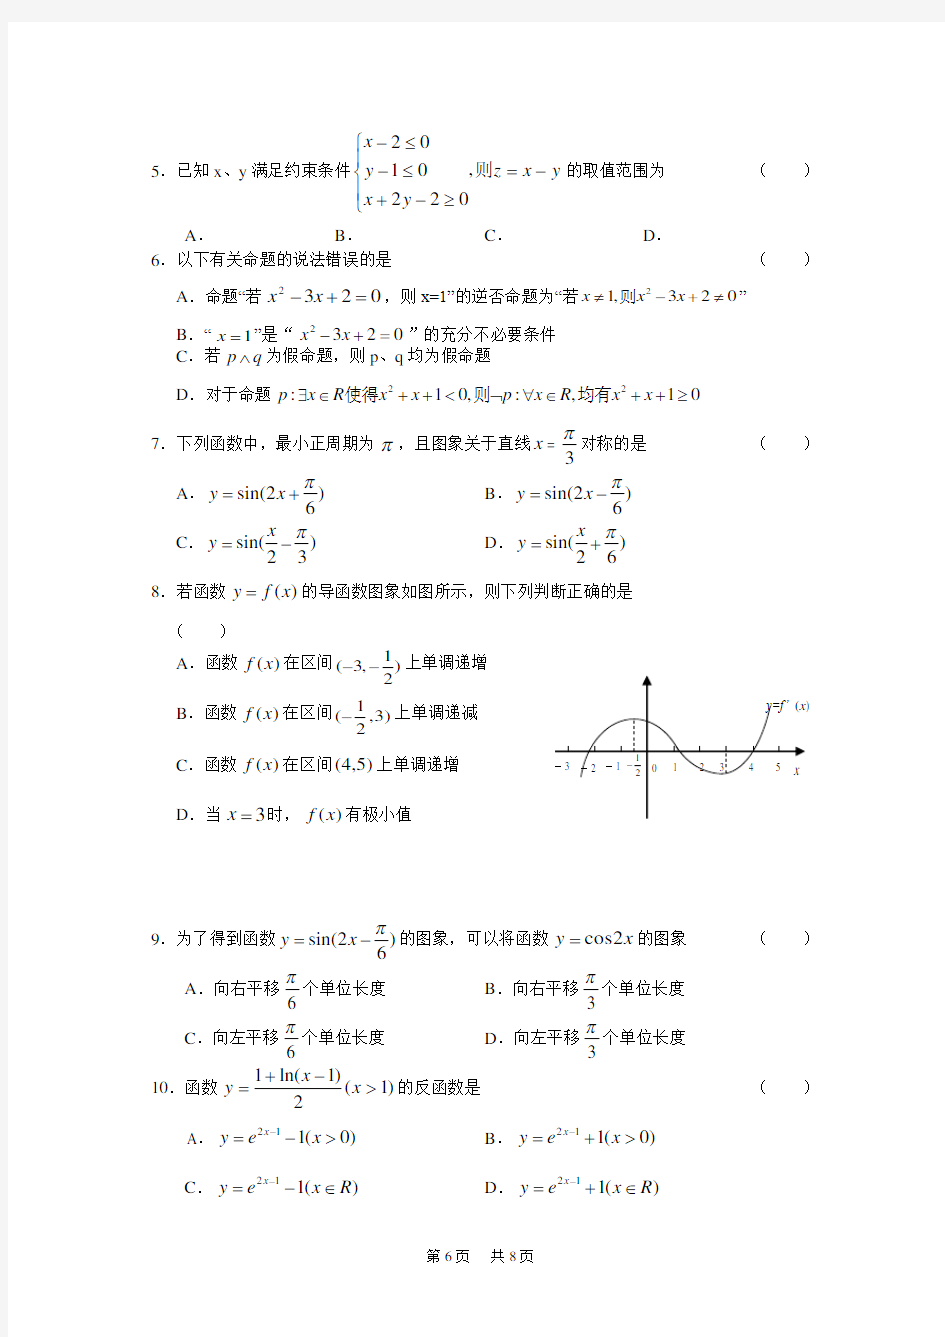 高三综合测试(一) 数学文